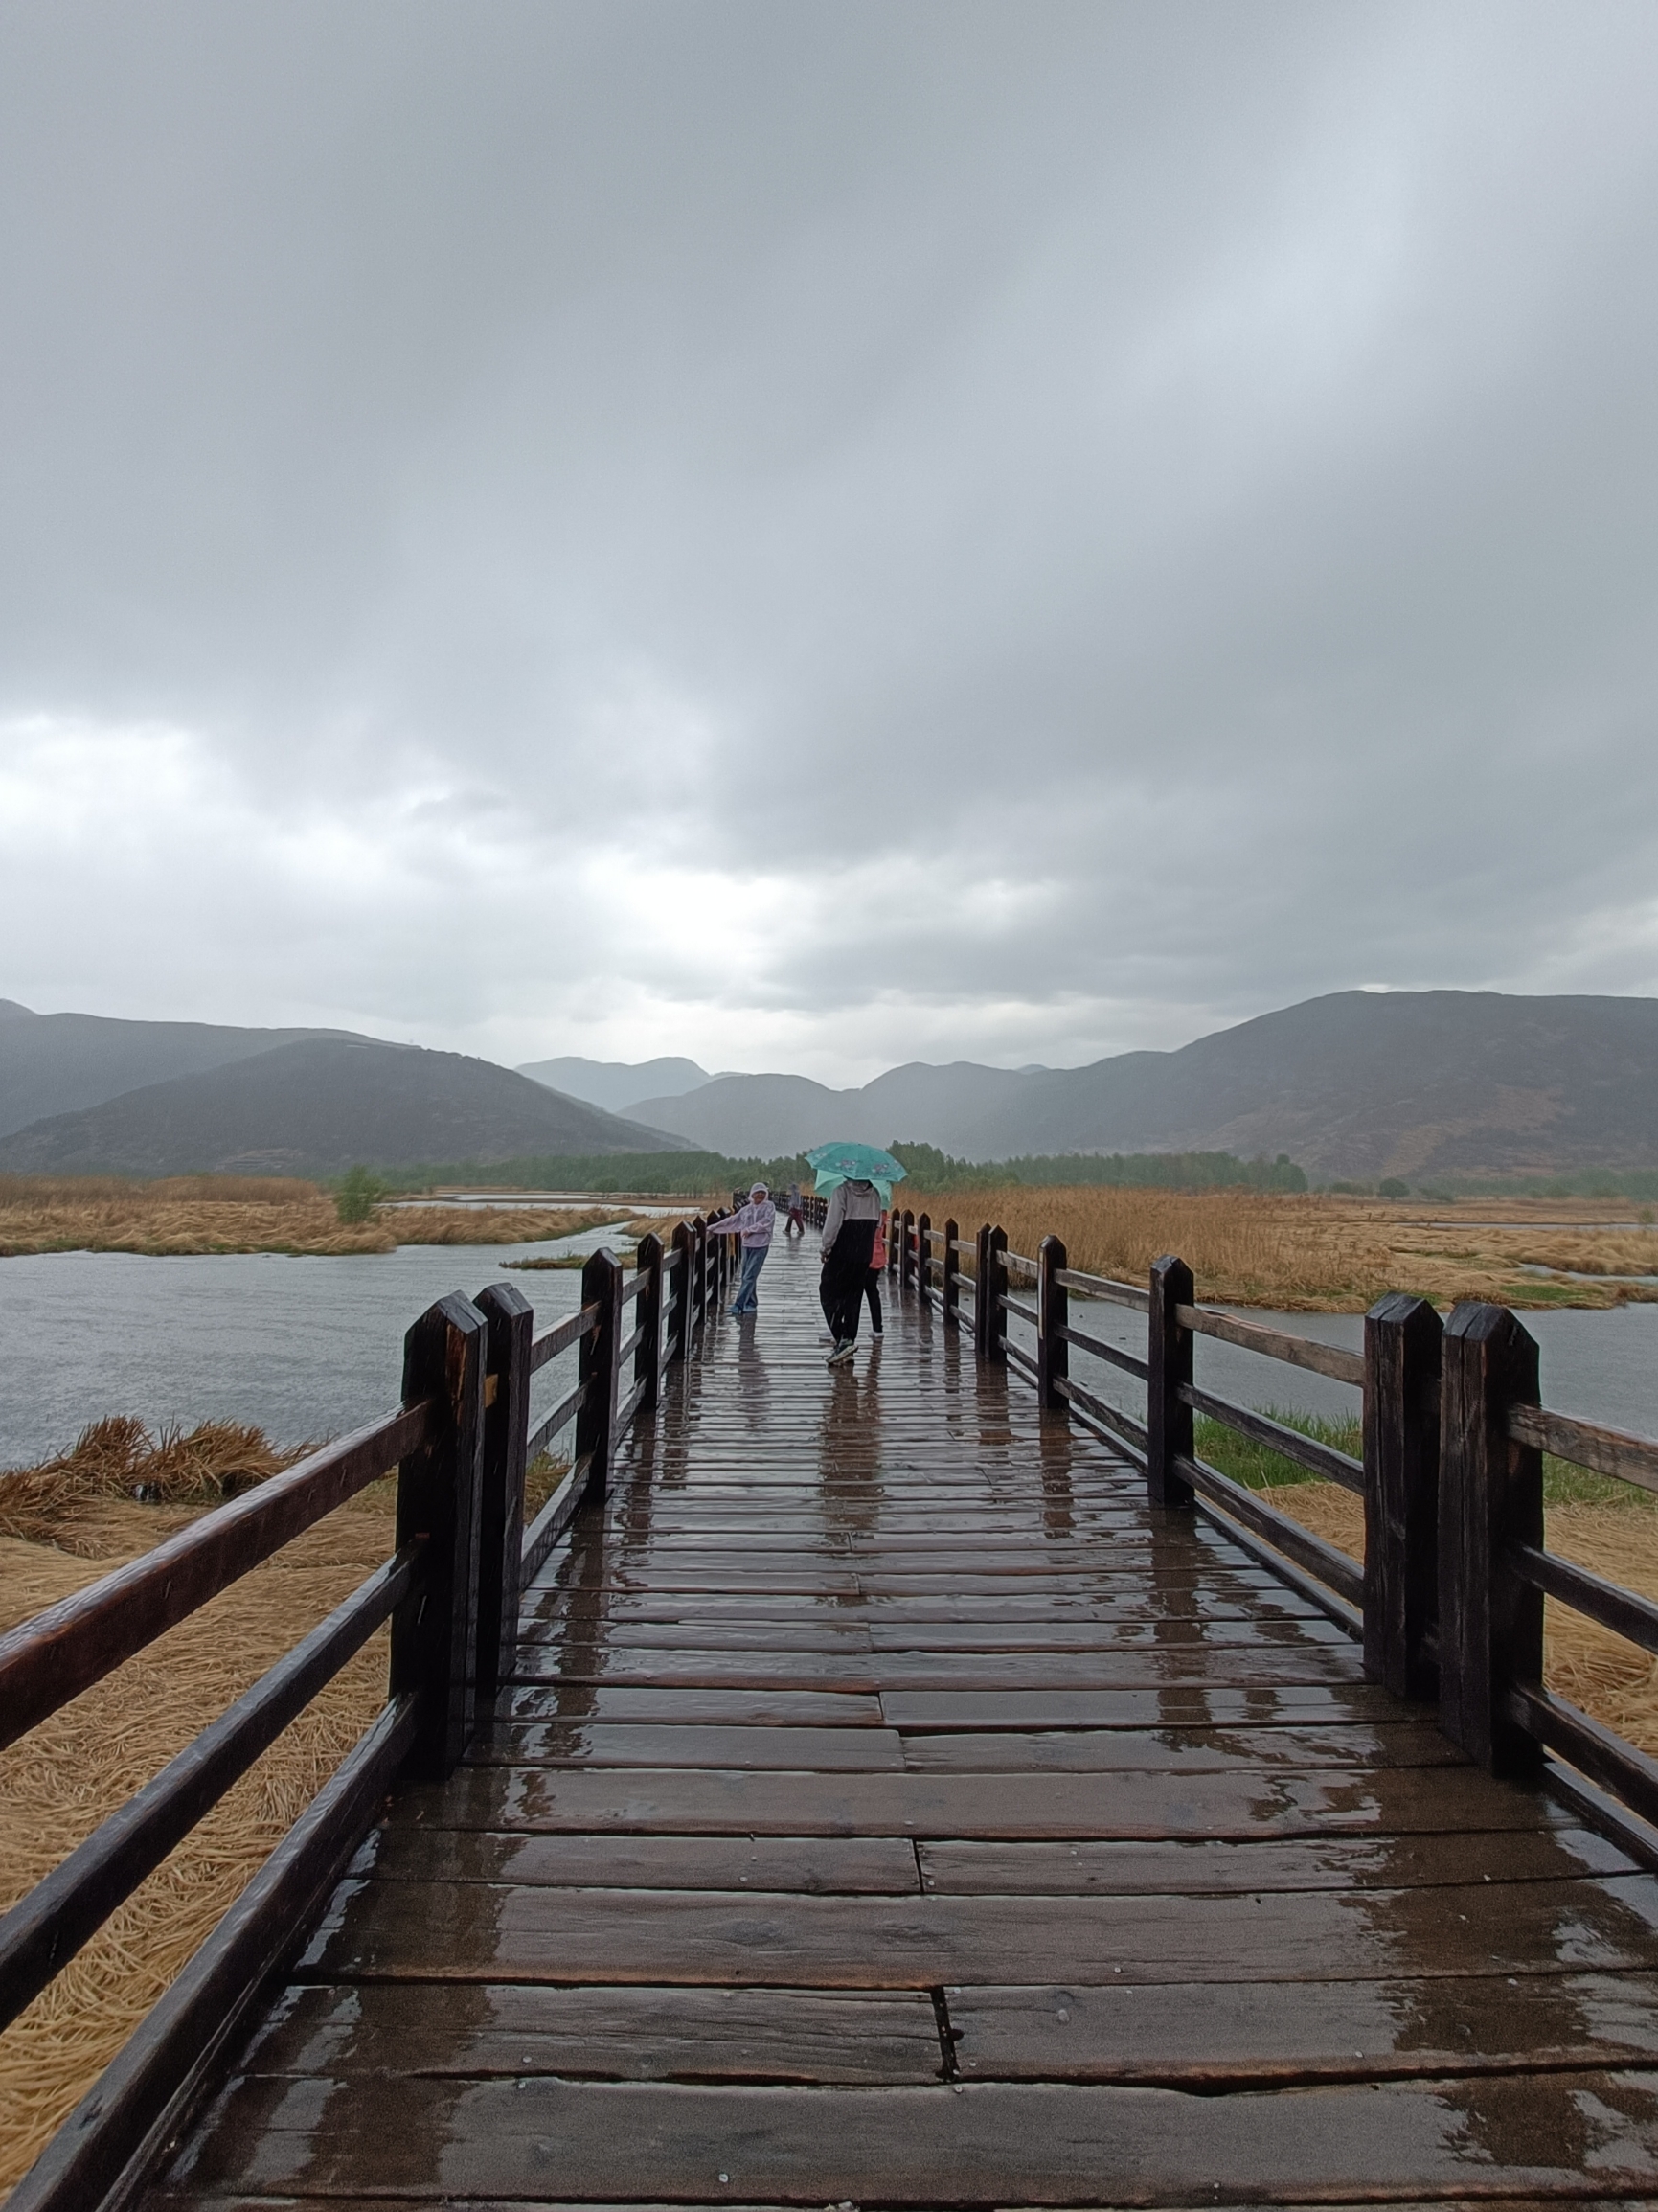 走婚桥，位于四川省凉山州盐源县境内，坐落在泸沽湖东南水域的草海区域。桥下由于长年泥沙淤积，导致水深变